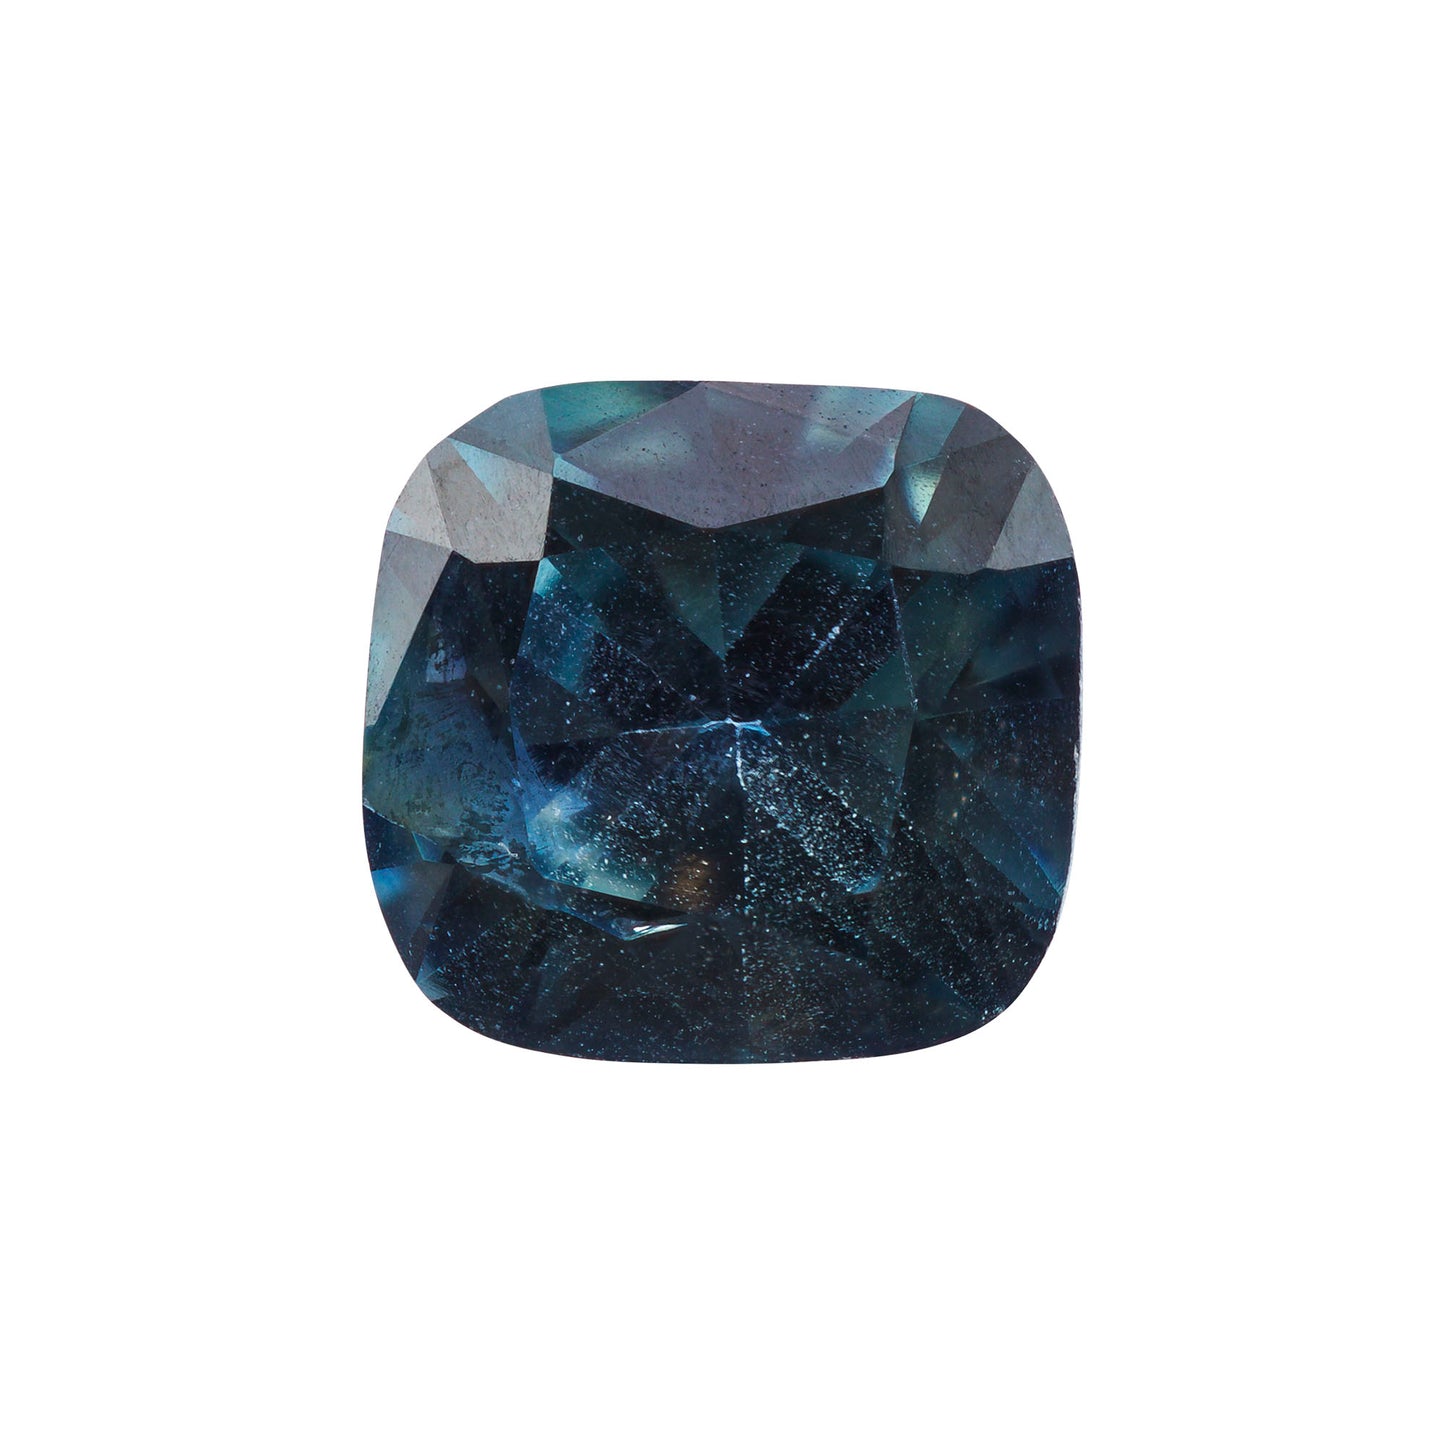 Saphir, Blau, Kissen, 0,56 ct., 4,9x4,6 mm